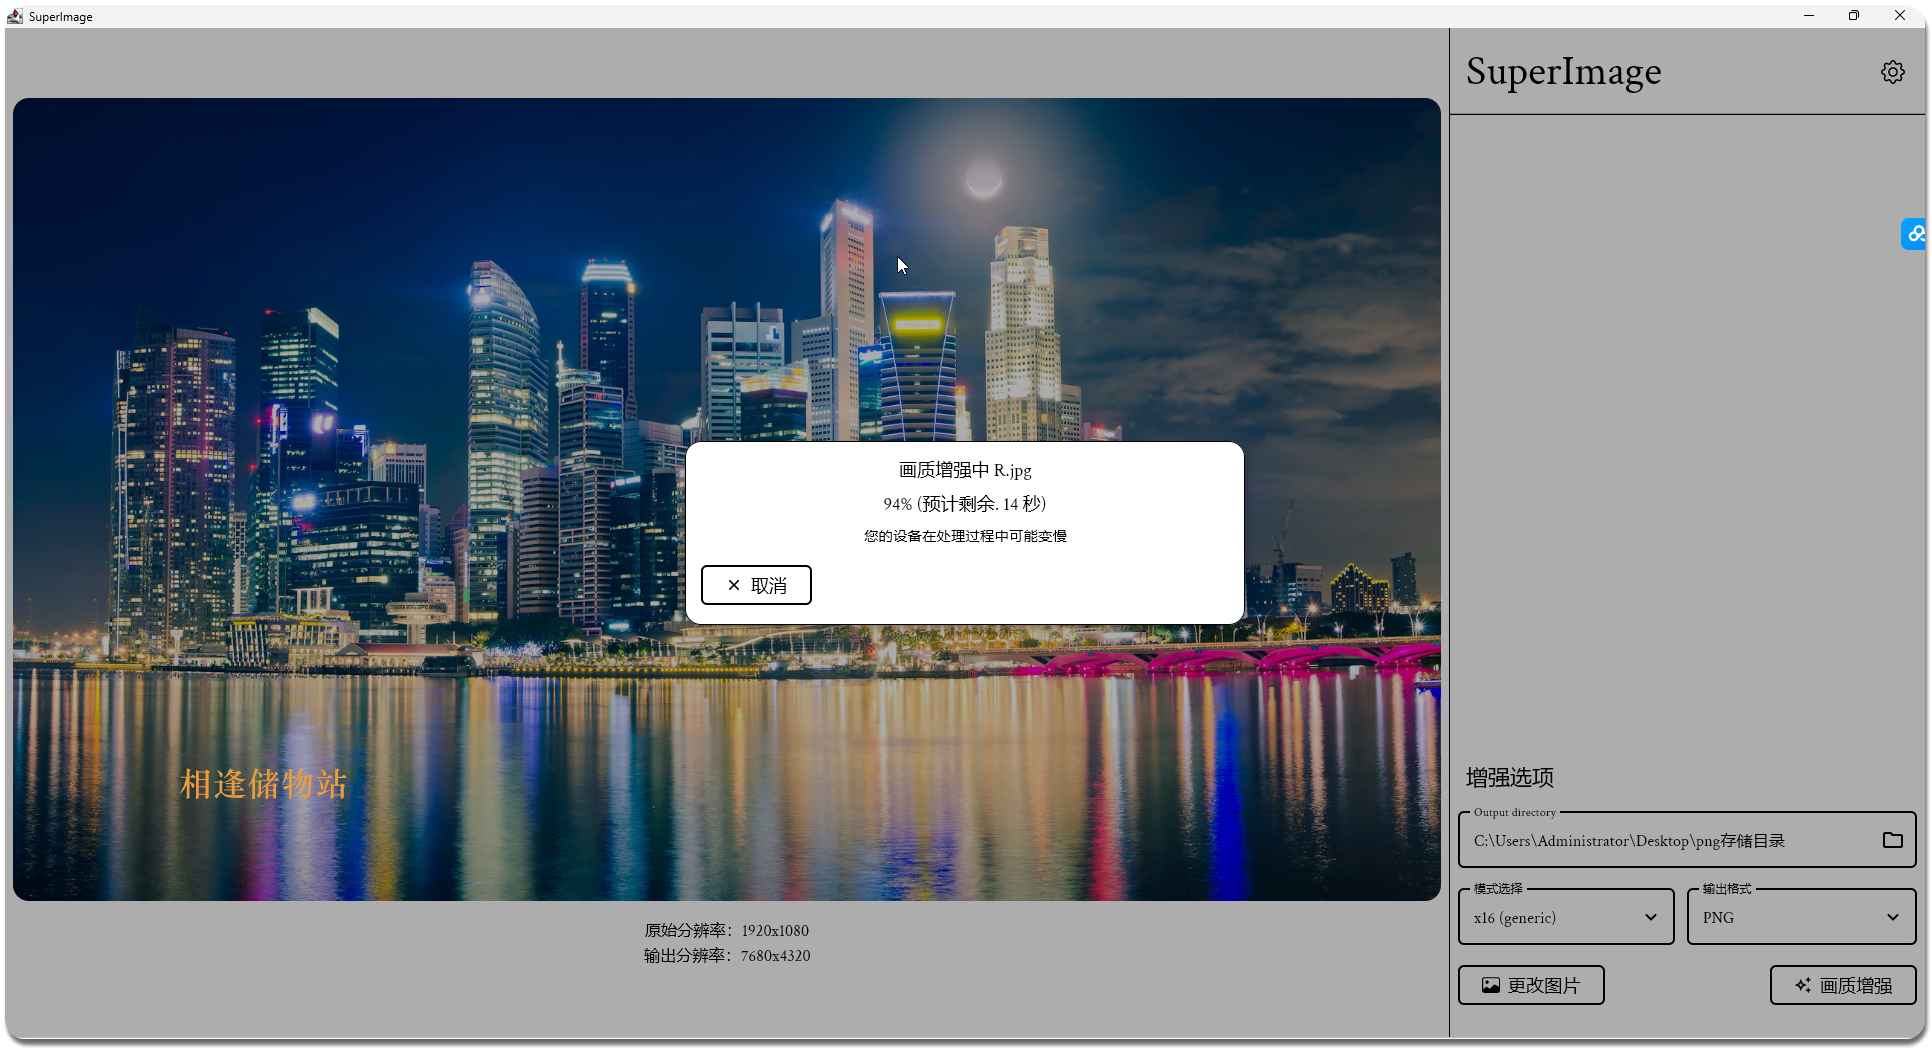 图片放大画质增强工具 SuperImage 1.4.0beta03 windows x64  免安装版本